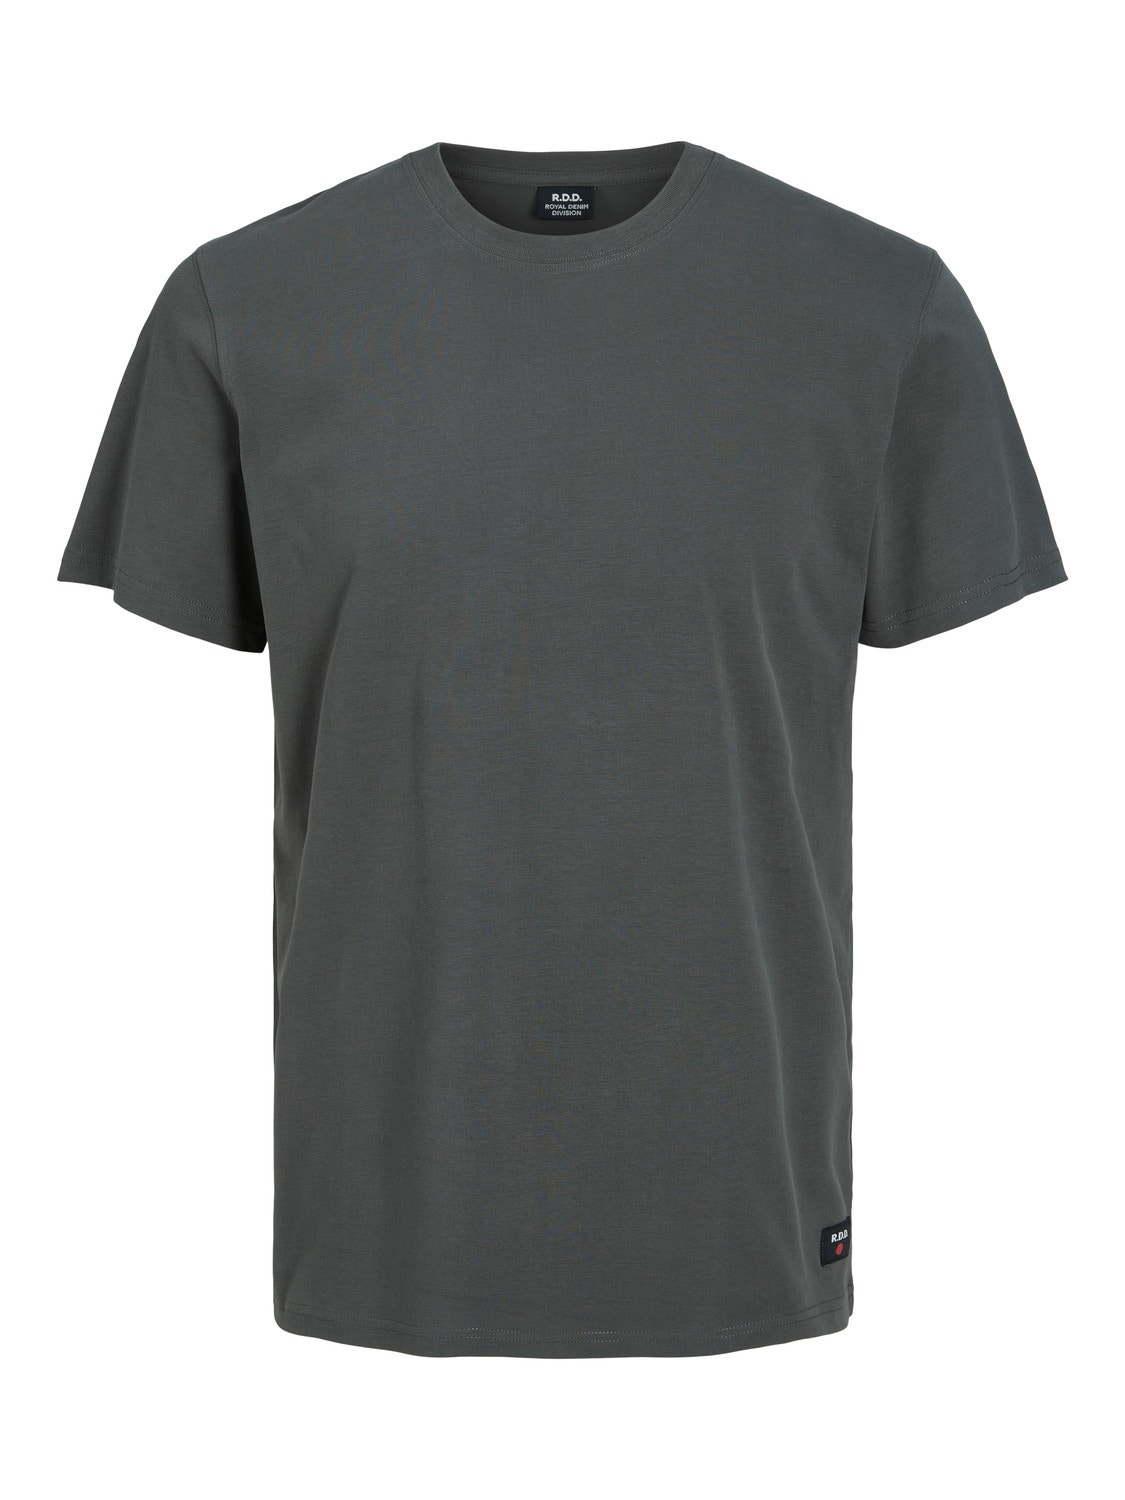 Jack & Jones RDD Einfarbig Rundhals T-shirt -Peat - 12218240